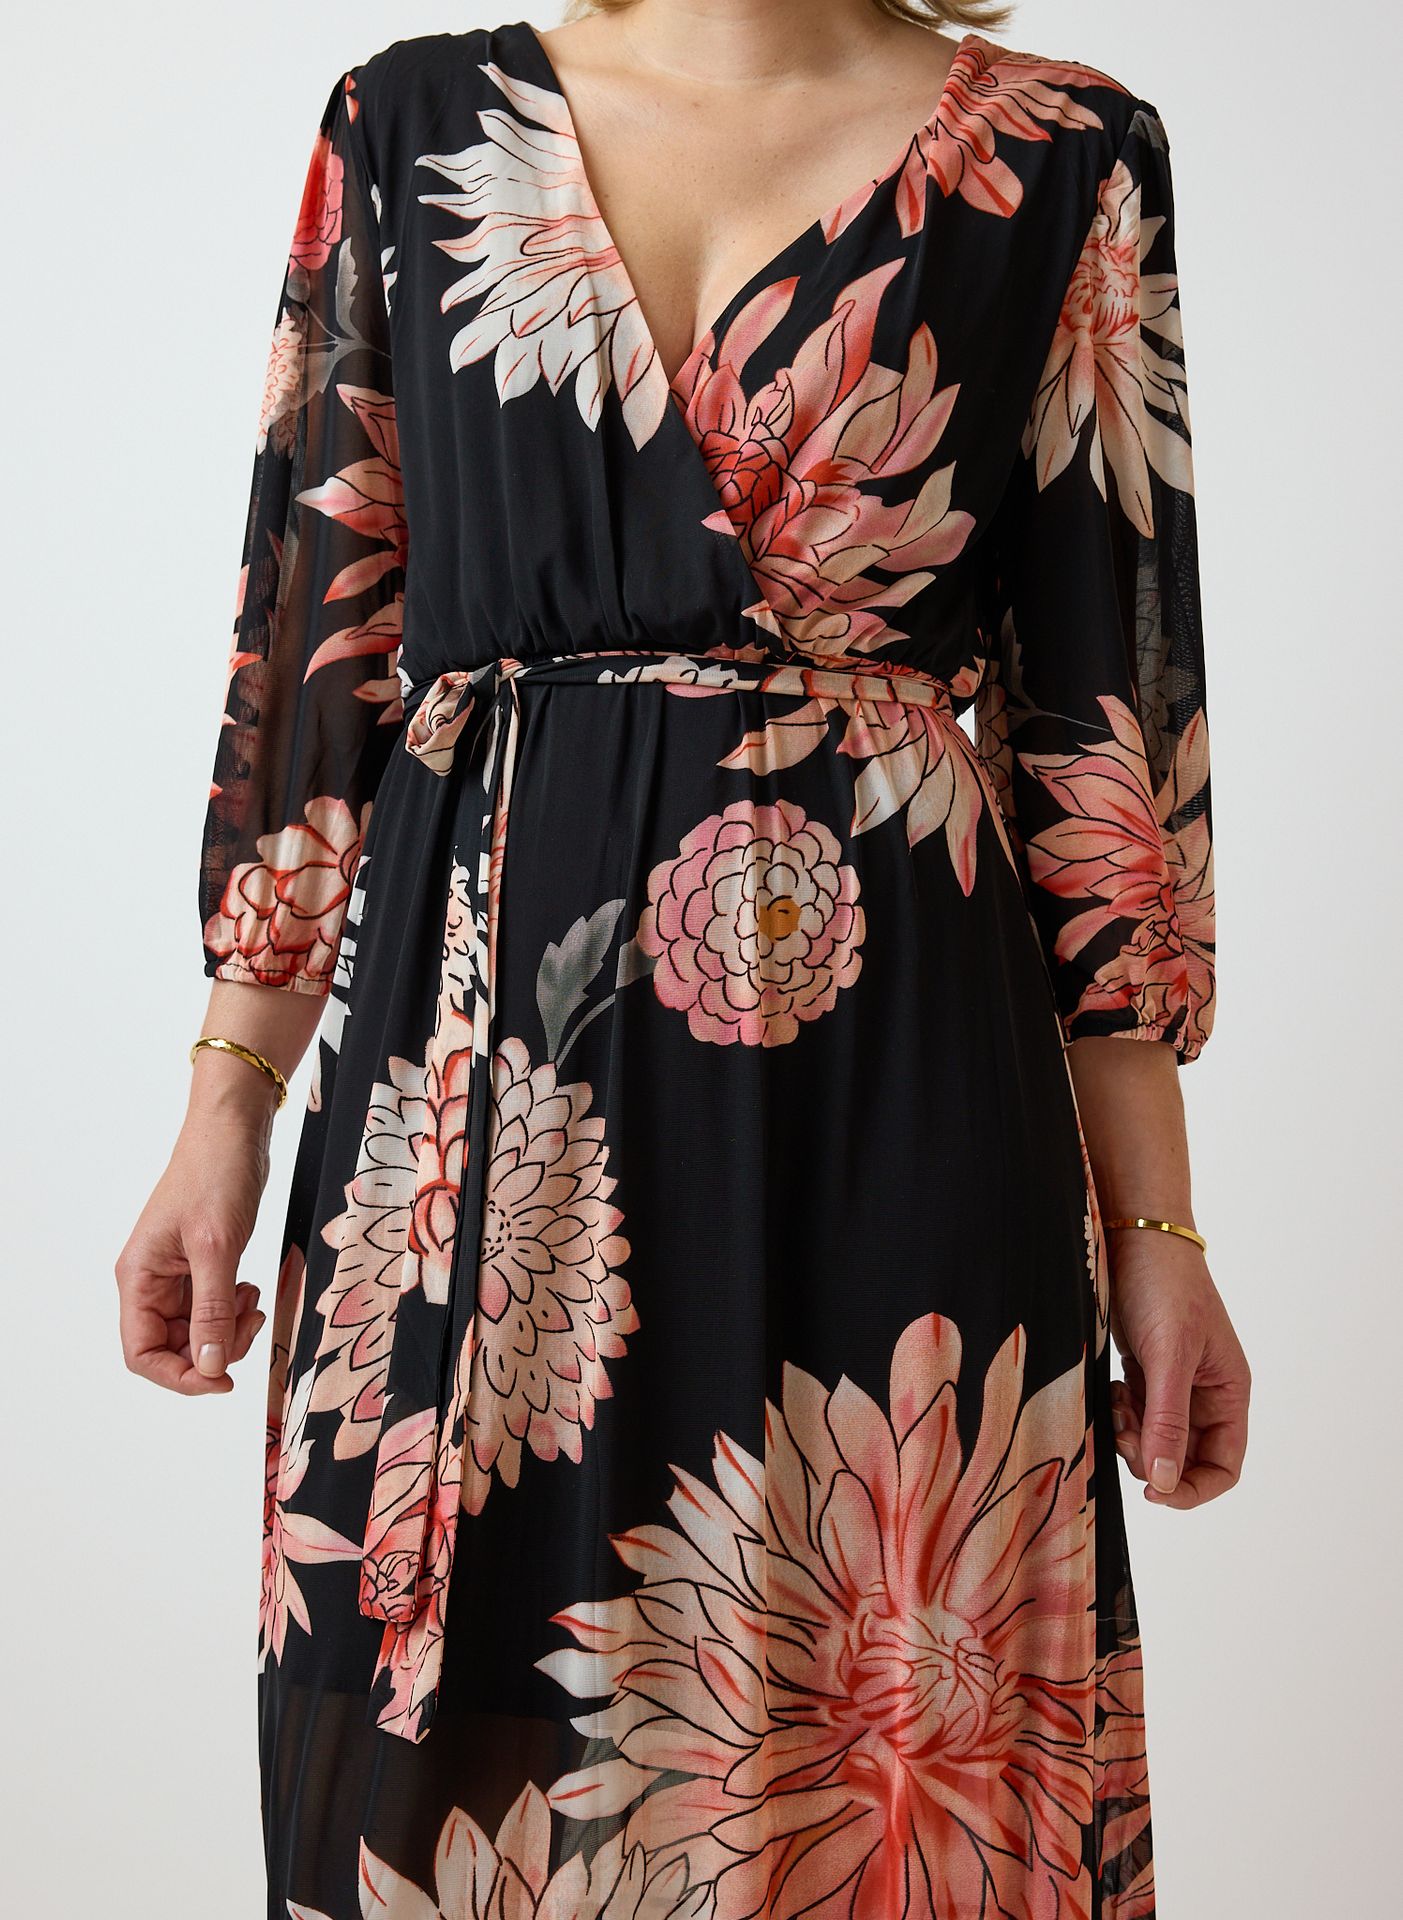 Norah Zwarte maxi jurk bloemenprint black multicolor 214053-020